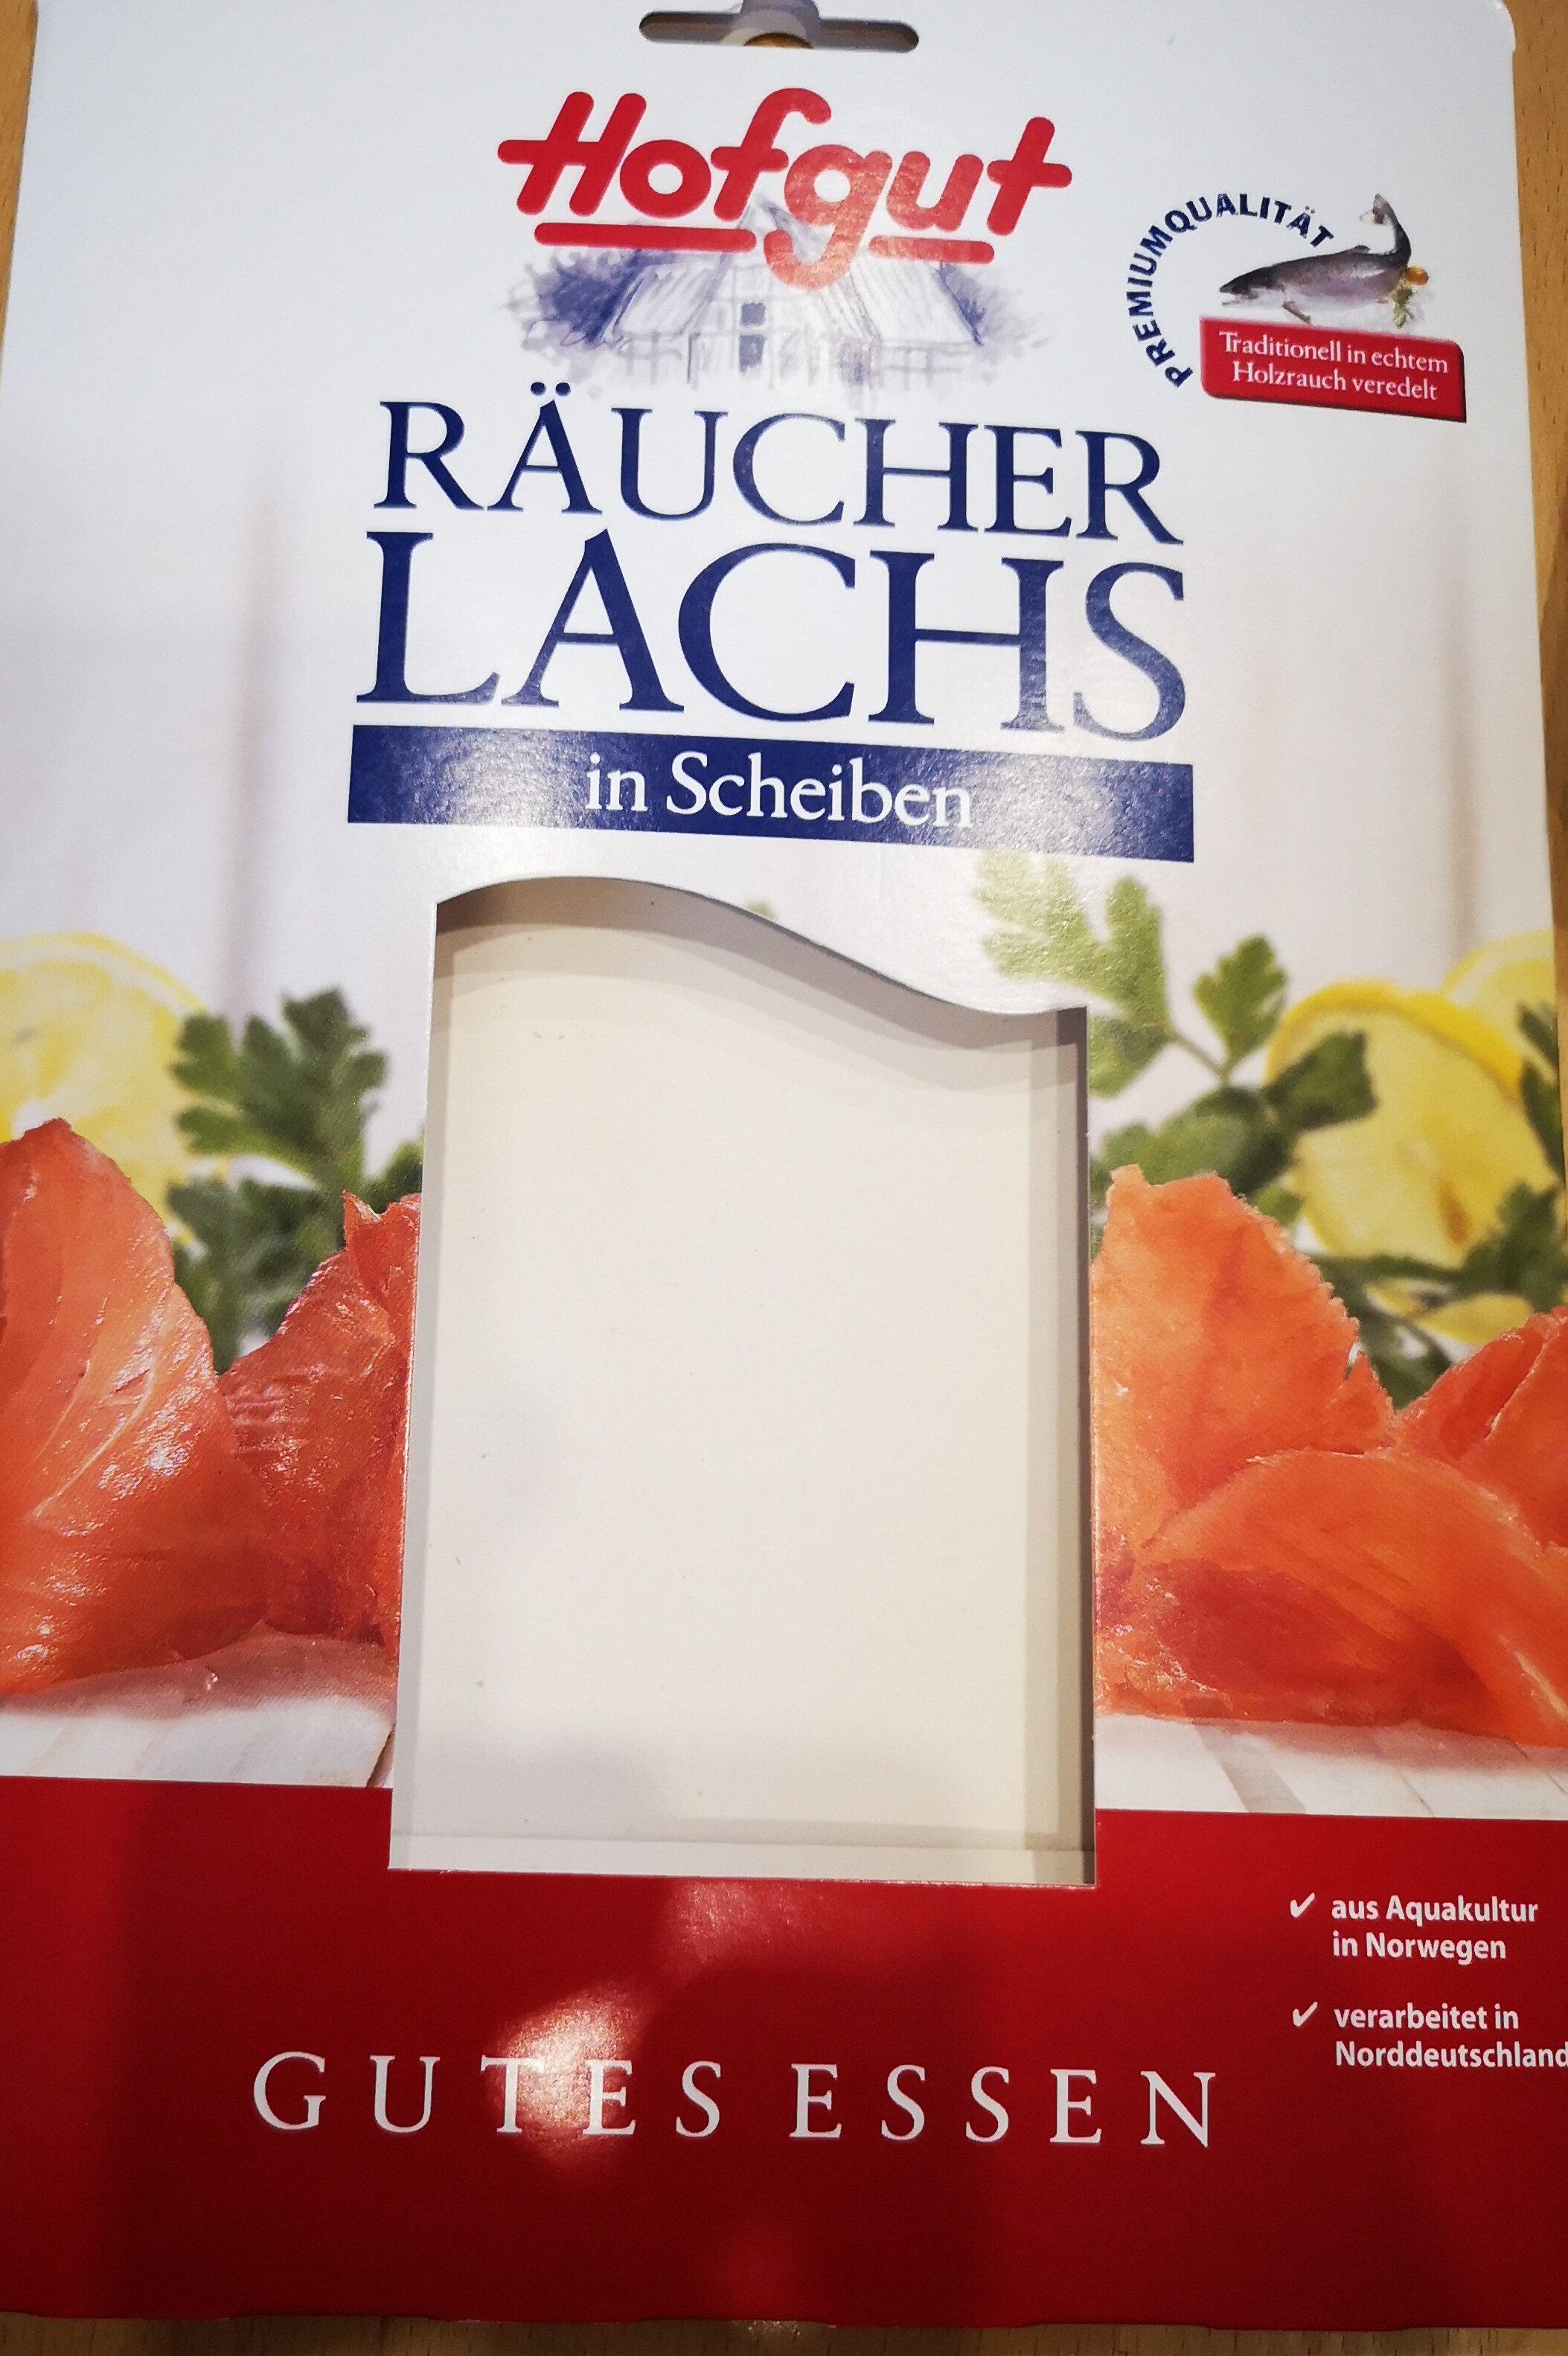 Räucherlachs - Produkt